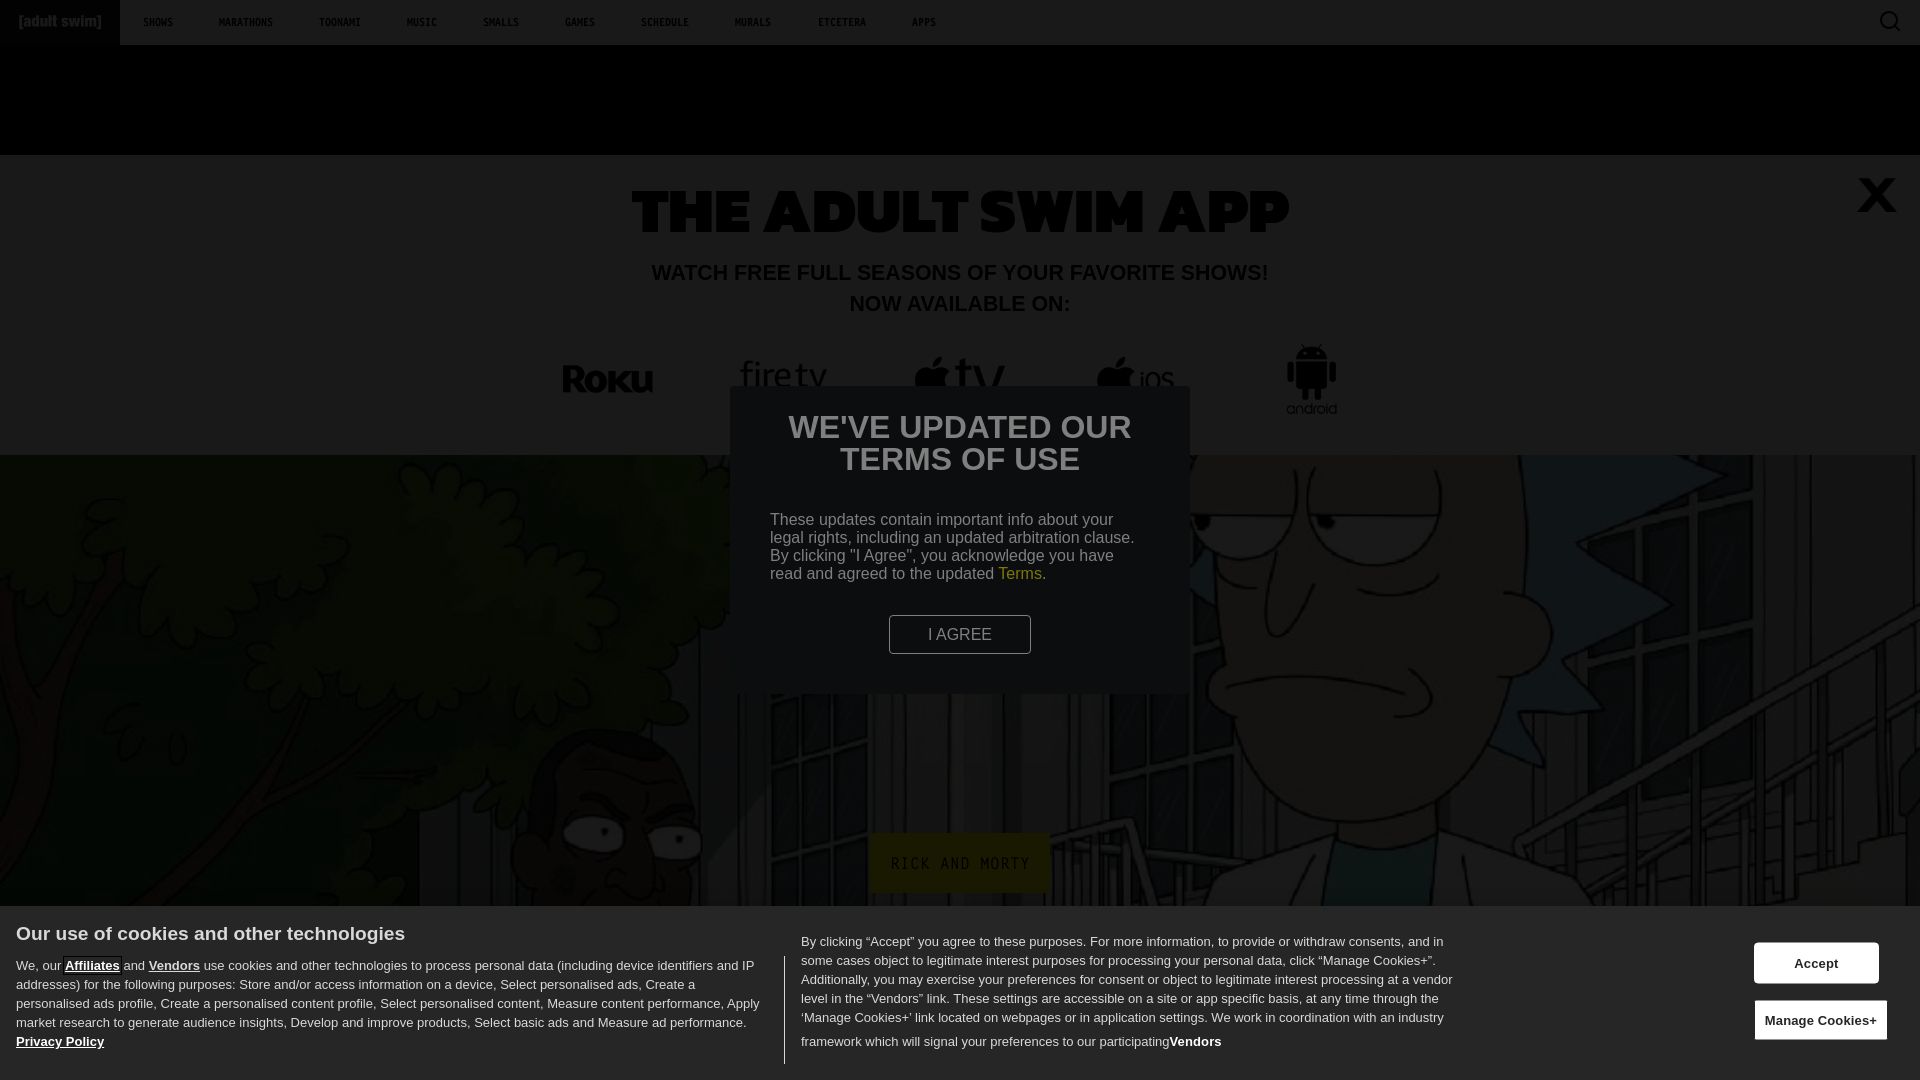 вебсайт adultswim.com Є   ONLINE